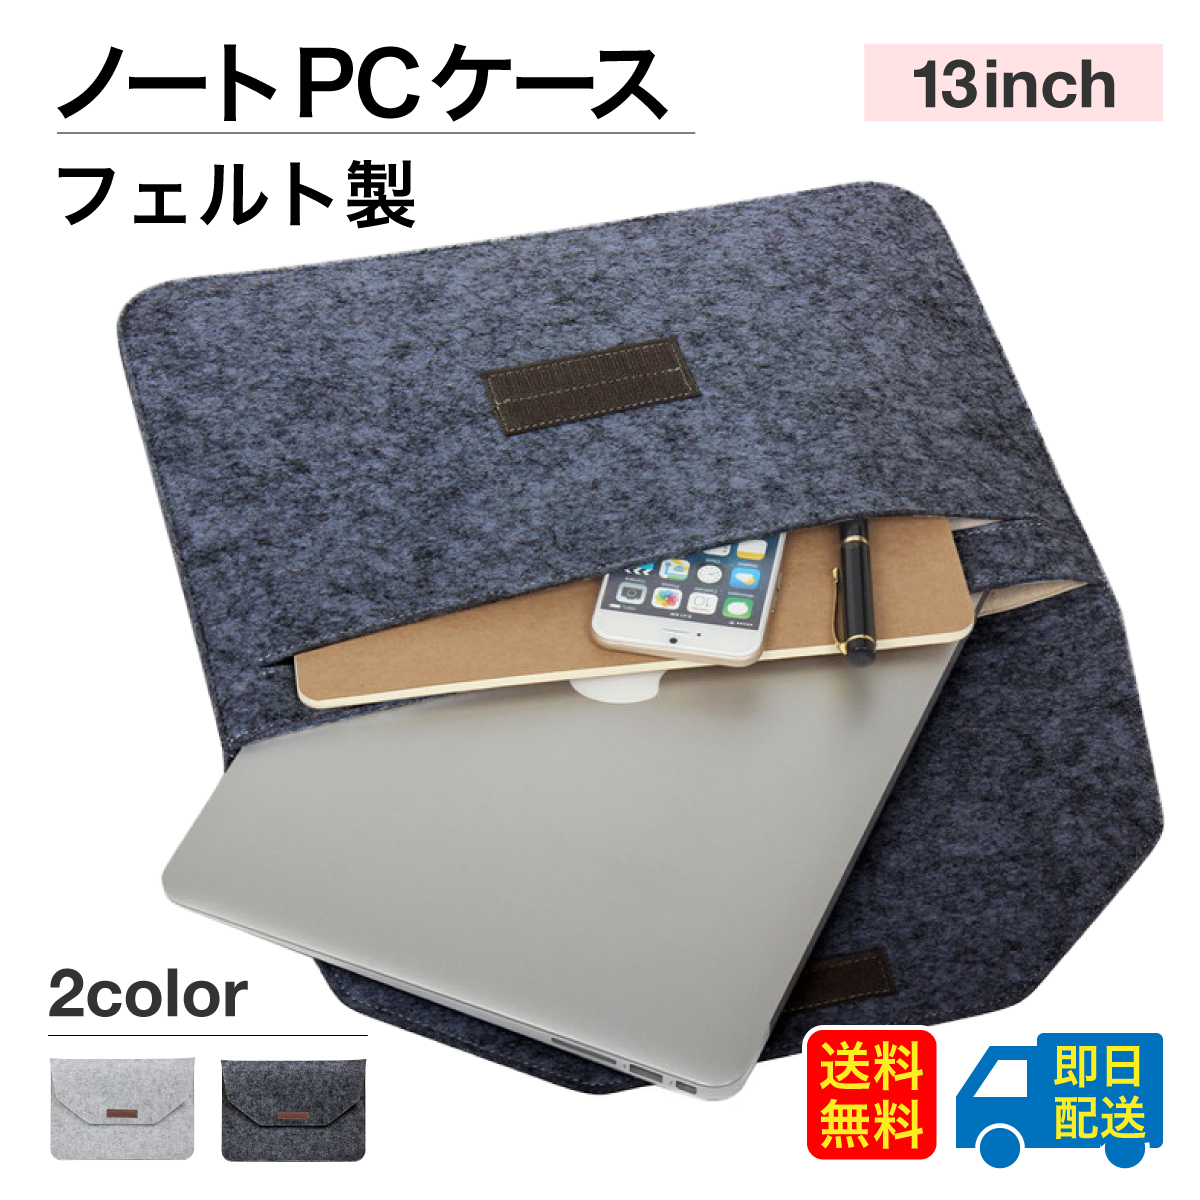 セール品 ノートpcケース パソコンケース 13インチ おしゃれ 韓国 パソコン フェルトケース Pro macbook air pro iPad  PCバッグ ノー ブランド :felt-case:World Select 通販 